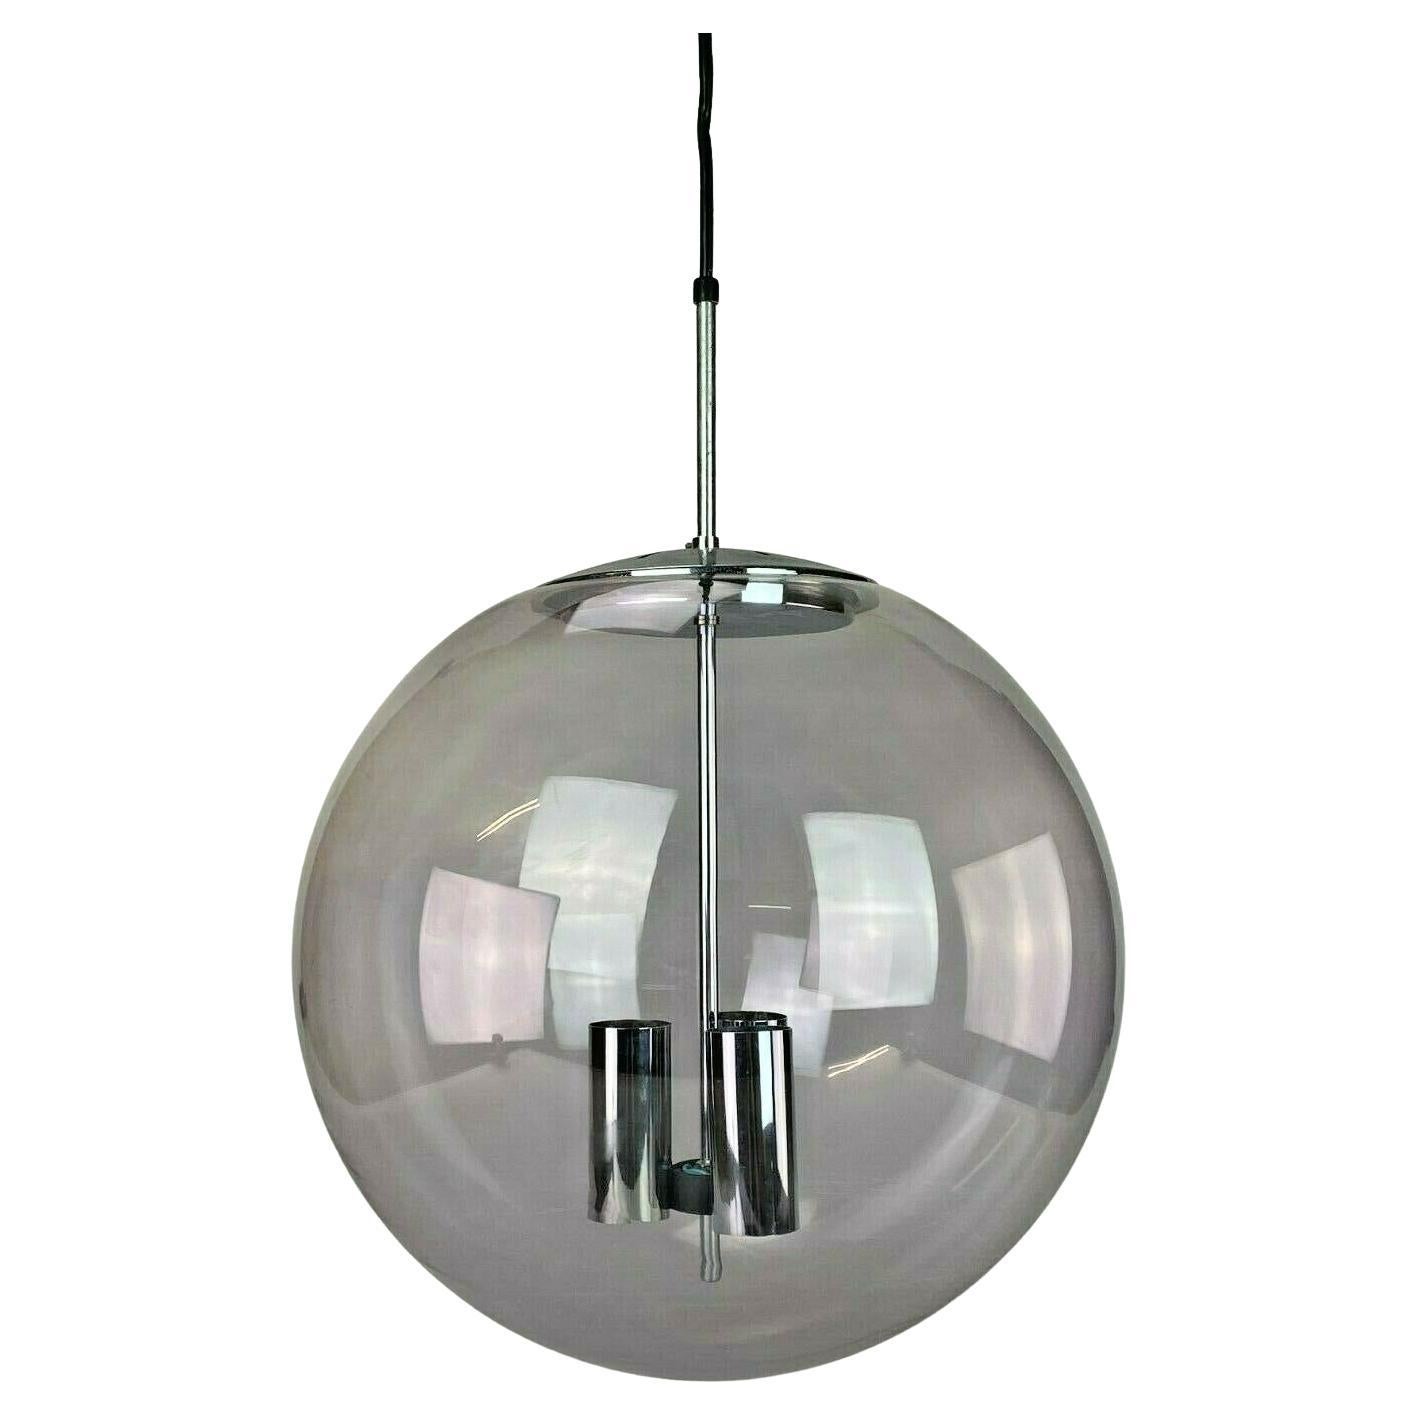 XXL 60s 70s Lamp Light Ceiling Lamp Limburg Spherical Lamp Ball Design